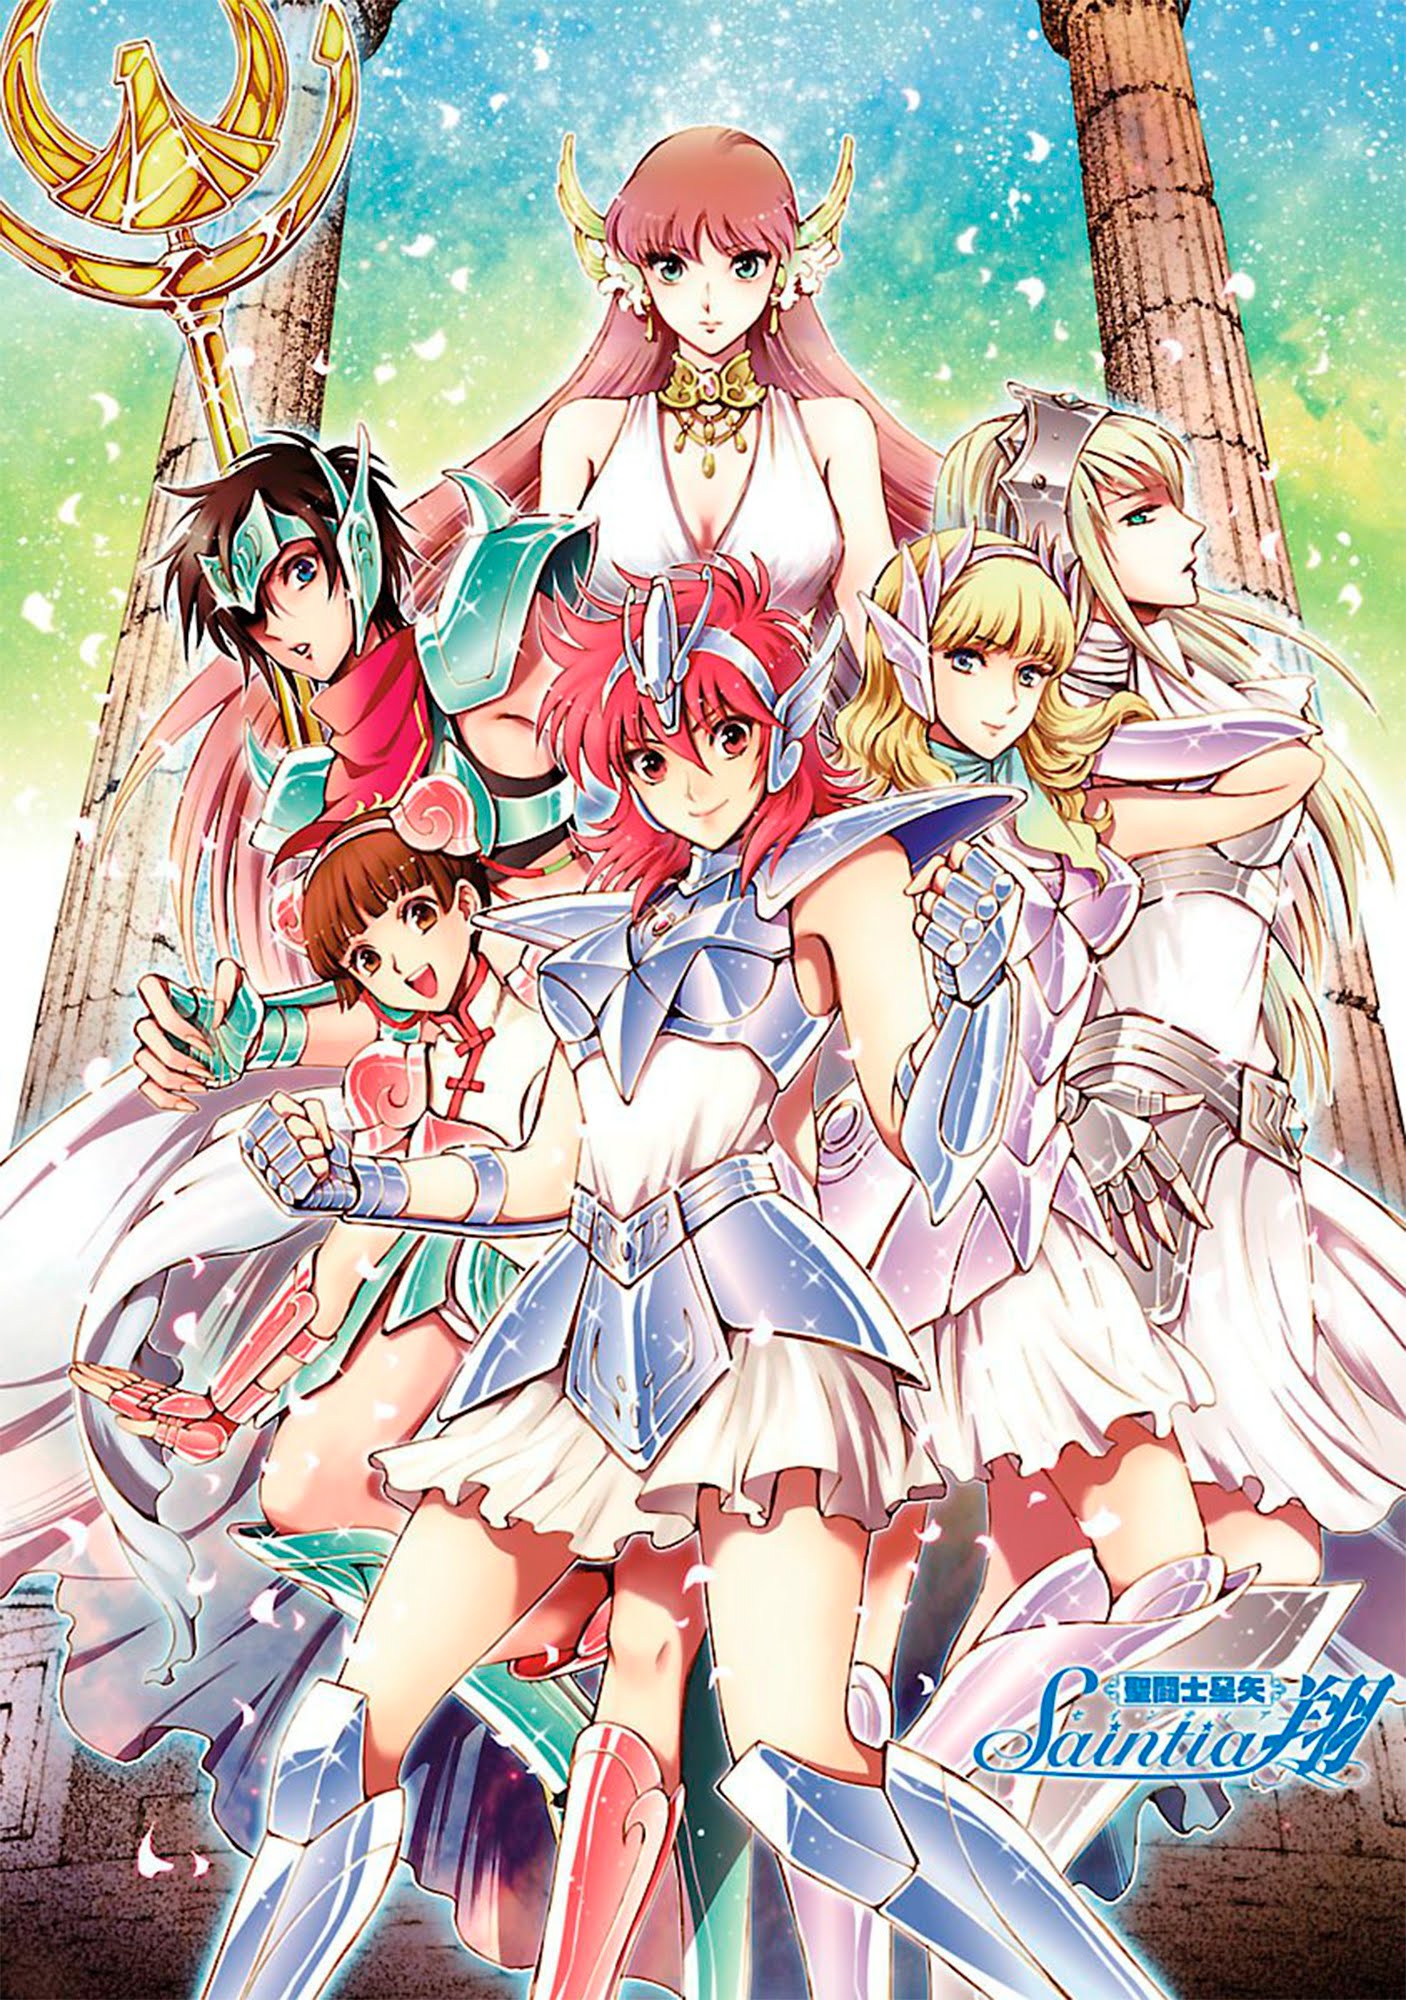 Os Cavaleiros do Zodíaco: Alma de Ouro – Dublado Episódio 12 - Anime HD -  Animes Online Gratis!